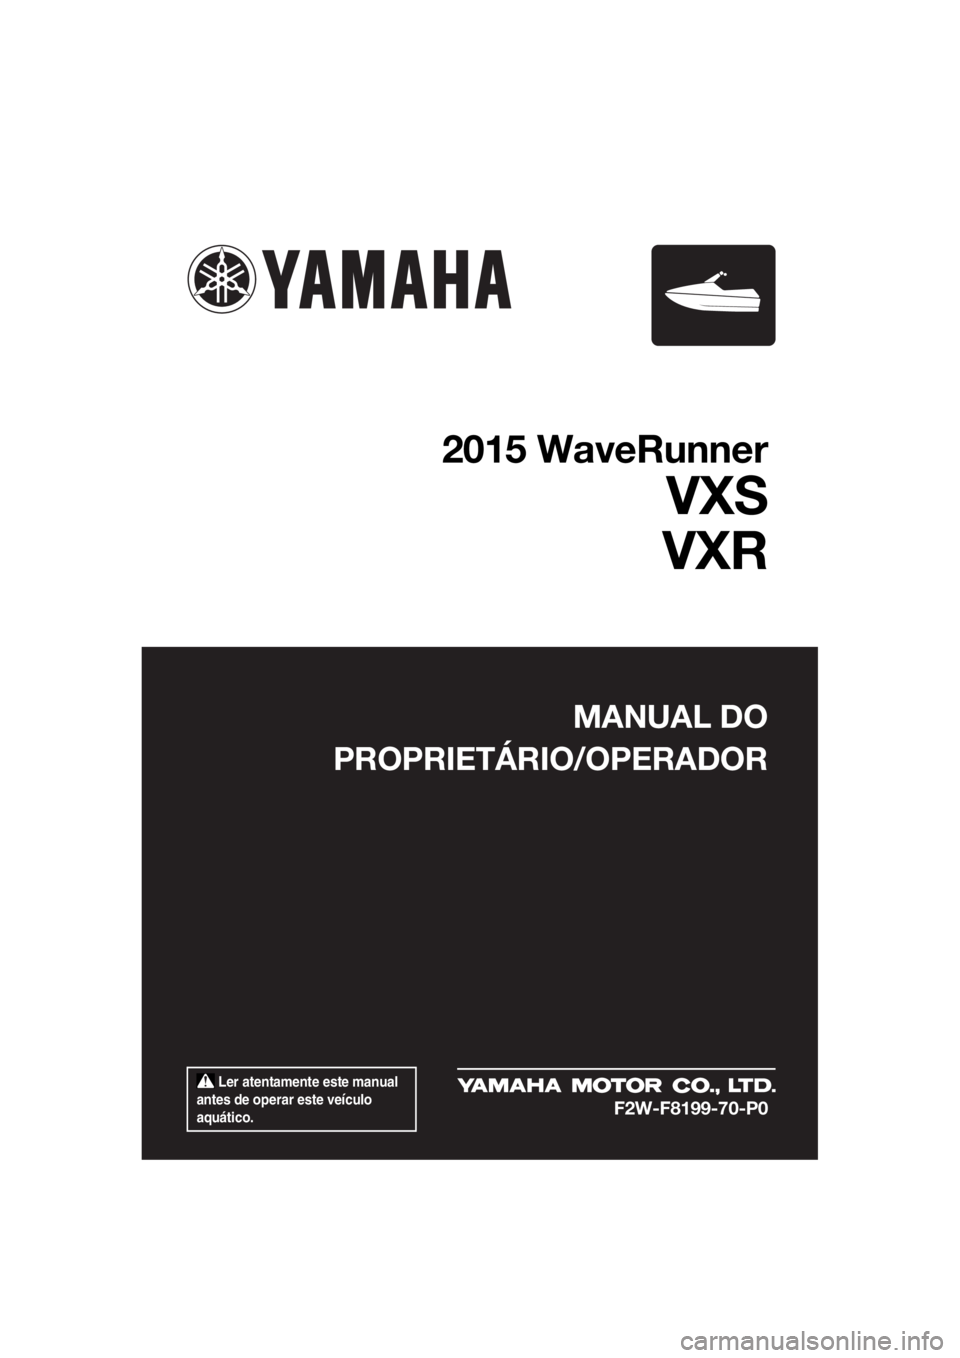 YAMAHA VXR 2015  Manual de utilização (in Portuguese)  Ler atentamente este manual 
antes de operar este veículo 
aquático.
MANUAL DO
PROPRIETÁRIO/OPERADOR
2015 WaveRunner
VXS
VXR
F2W-F8199-70-P0
UF2W70P0.book  Page 1  Tuesday, December 8, 2015  2:06 